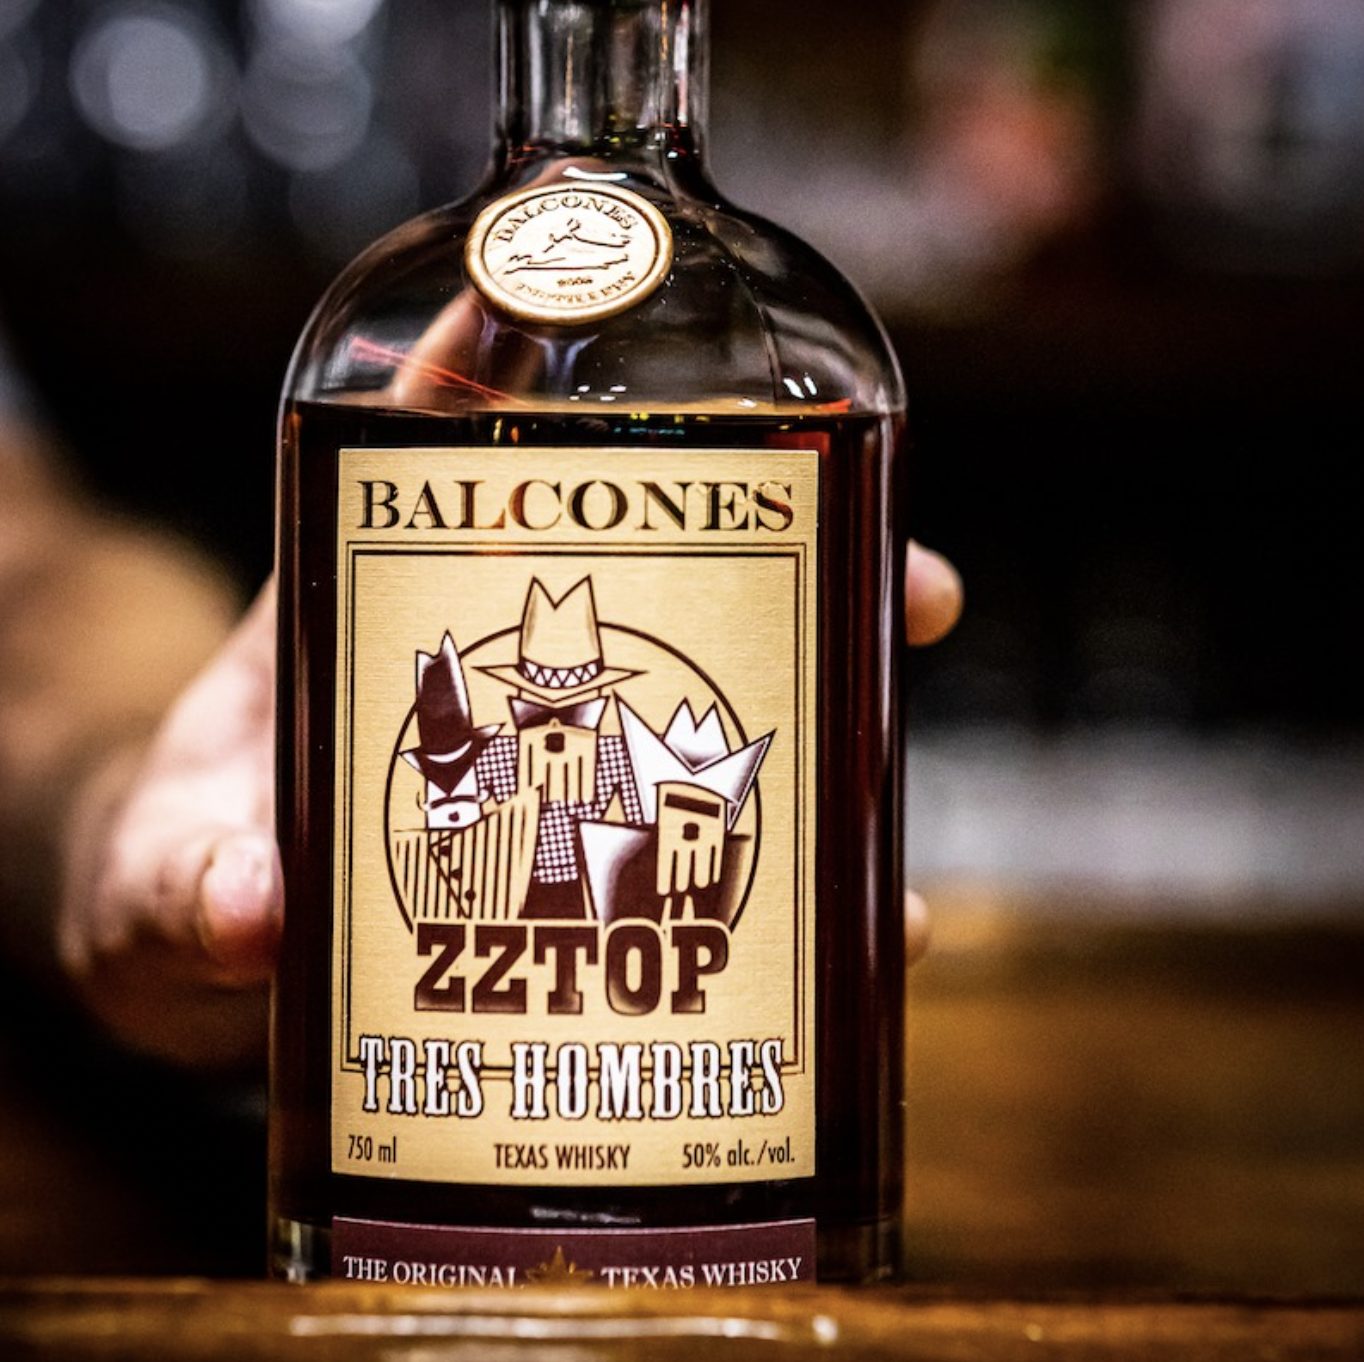 zz top tres hombres texas whiskey balcones distillery